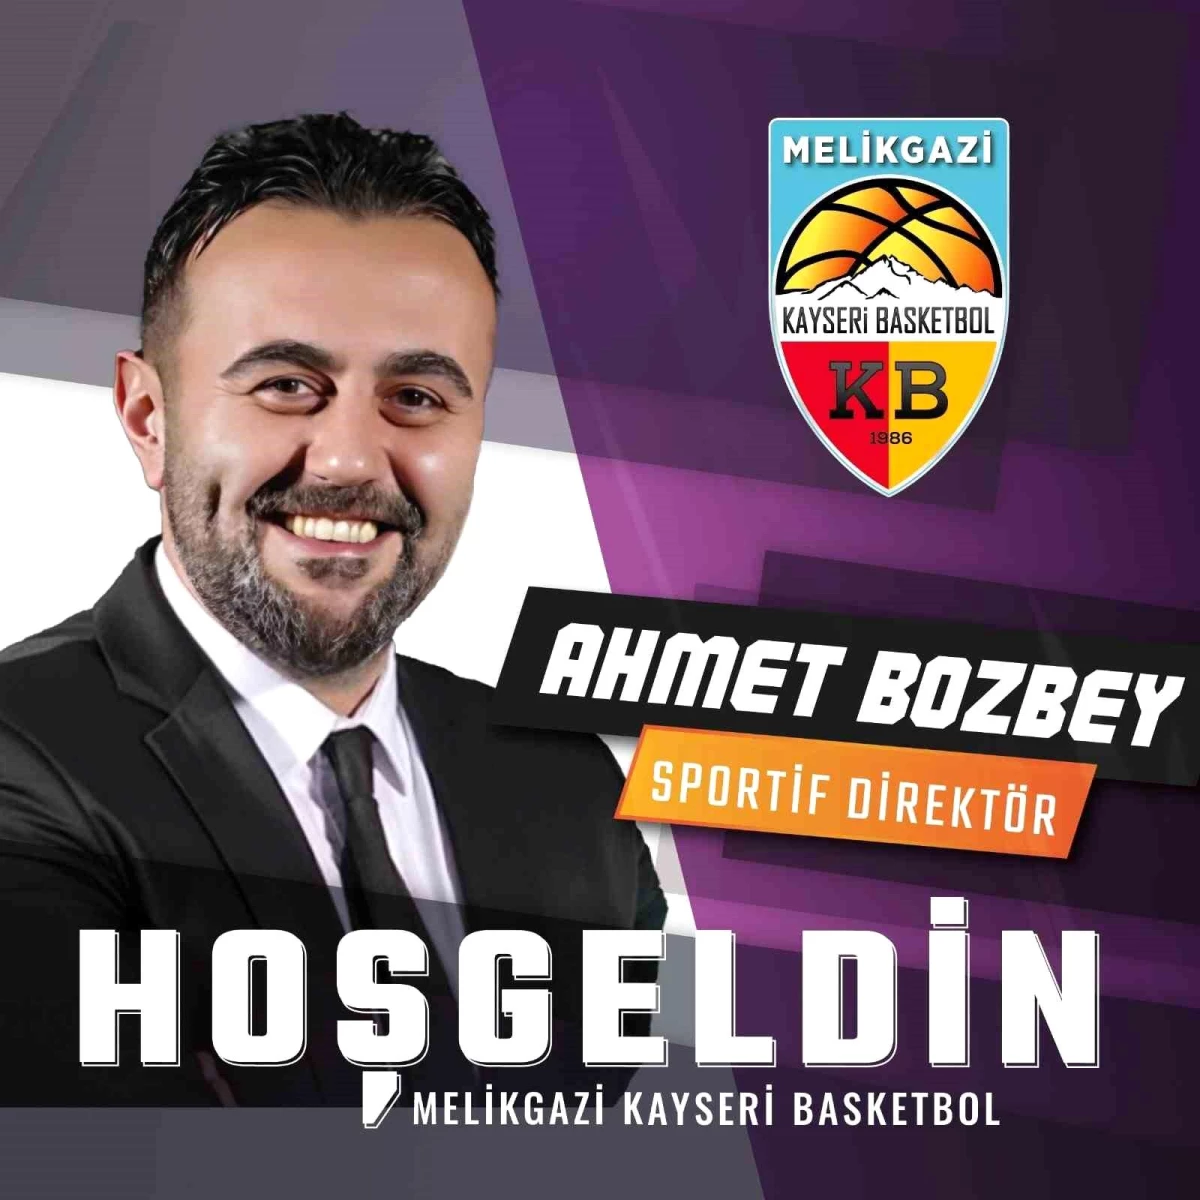 Melikgazi Kayseri Basketbol Kulübü'ne Ahmet Bozbey Sportif Yönetici olarak atandı